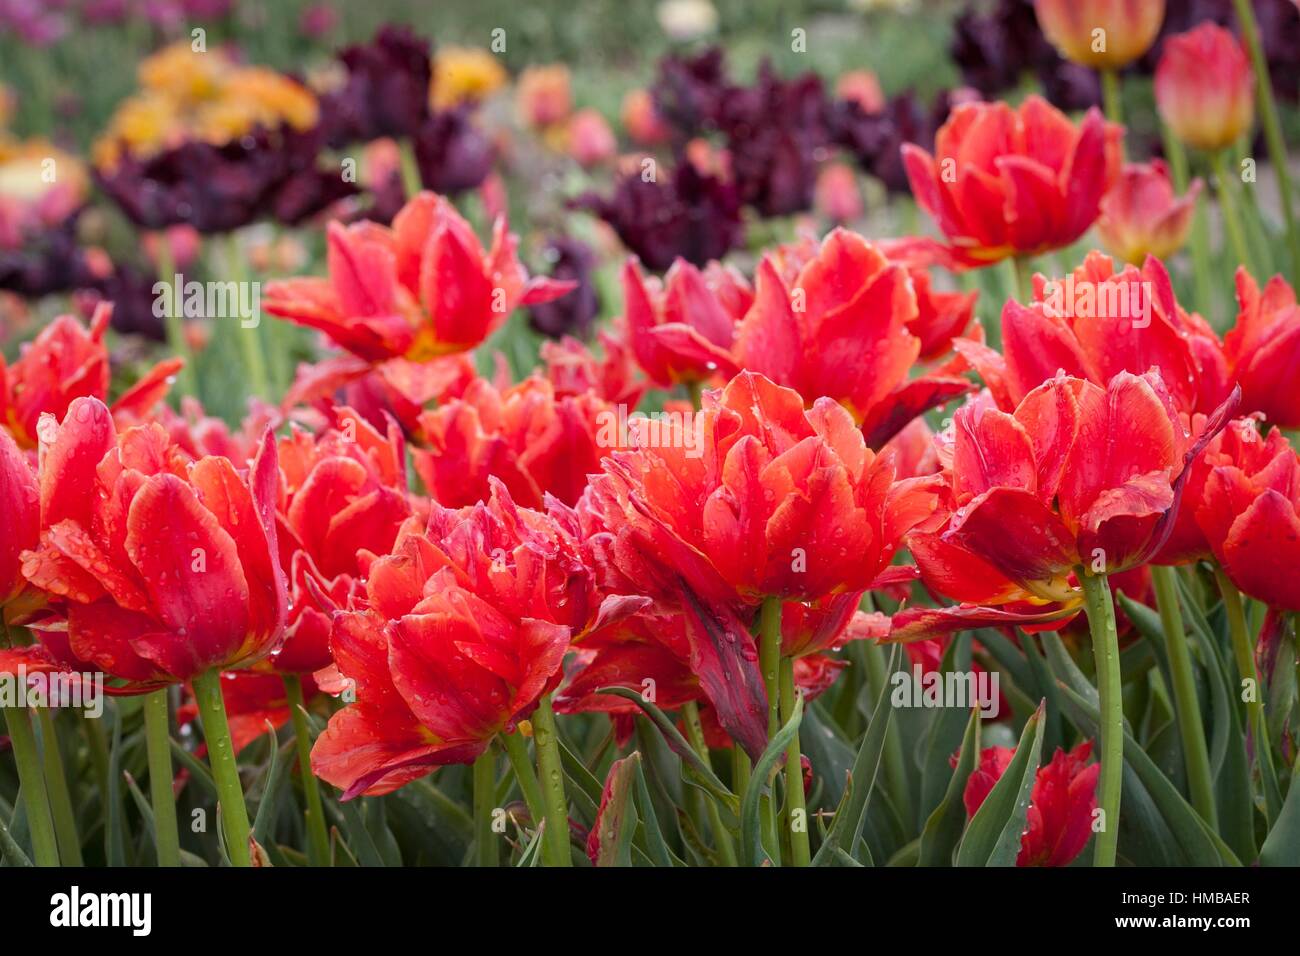 L'un des plus grands de tulipes dans reproduction Chrzypsko) près de Poznan - Pologne. Plus de 450 variétés de tulipes. Banque D'Images